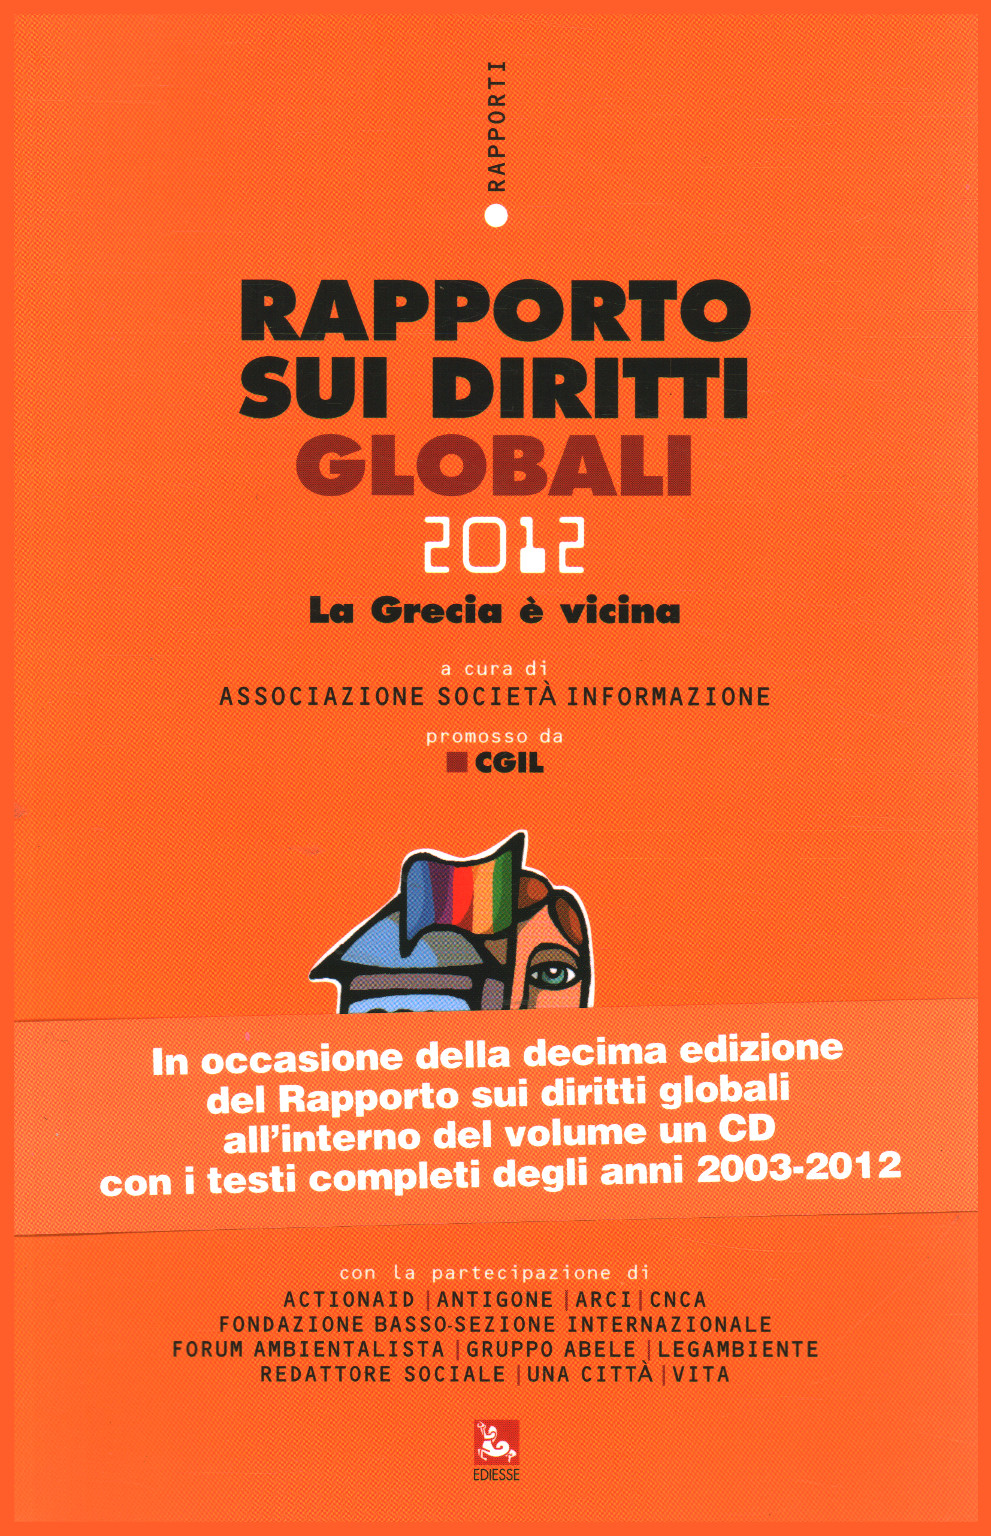 Rapporto sui diritti globali 2012, Associazione Società Informazione.